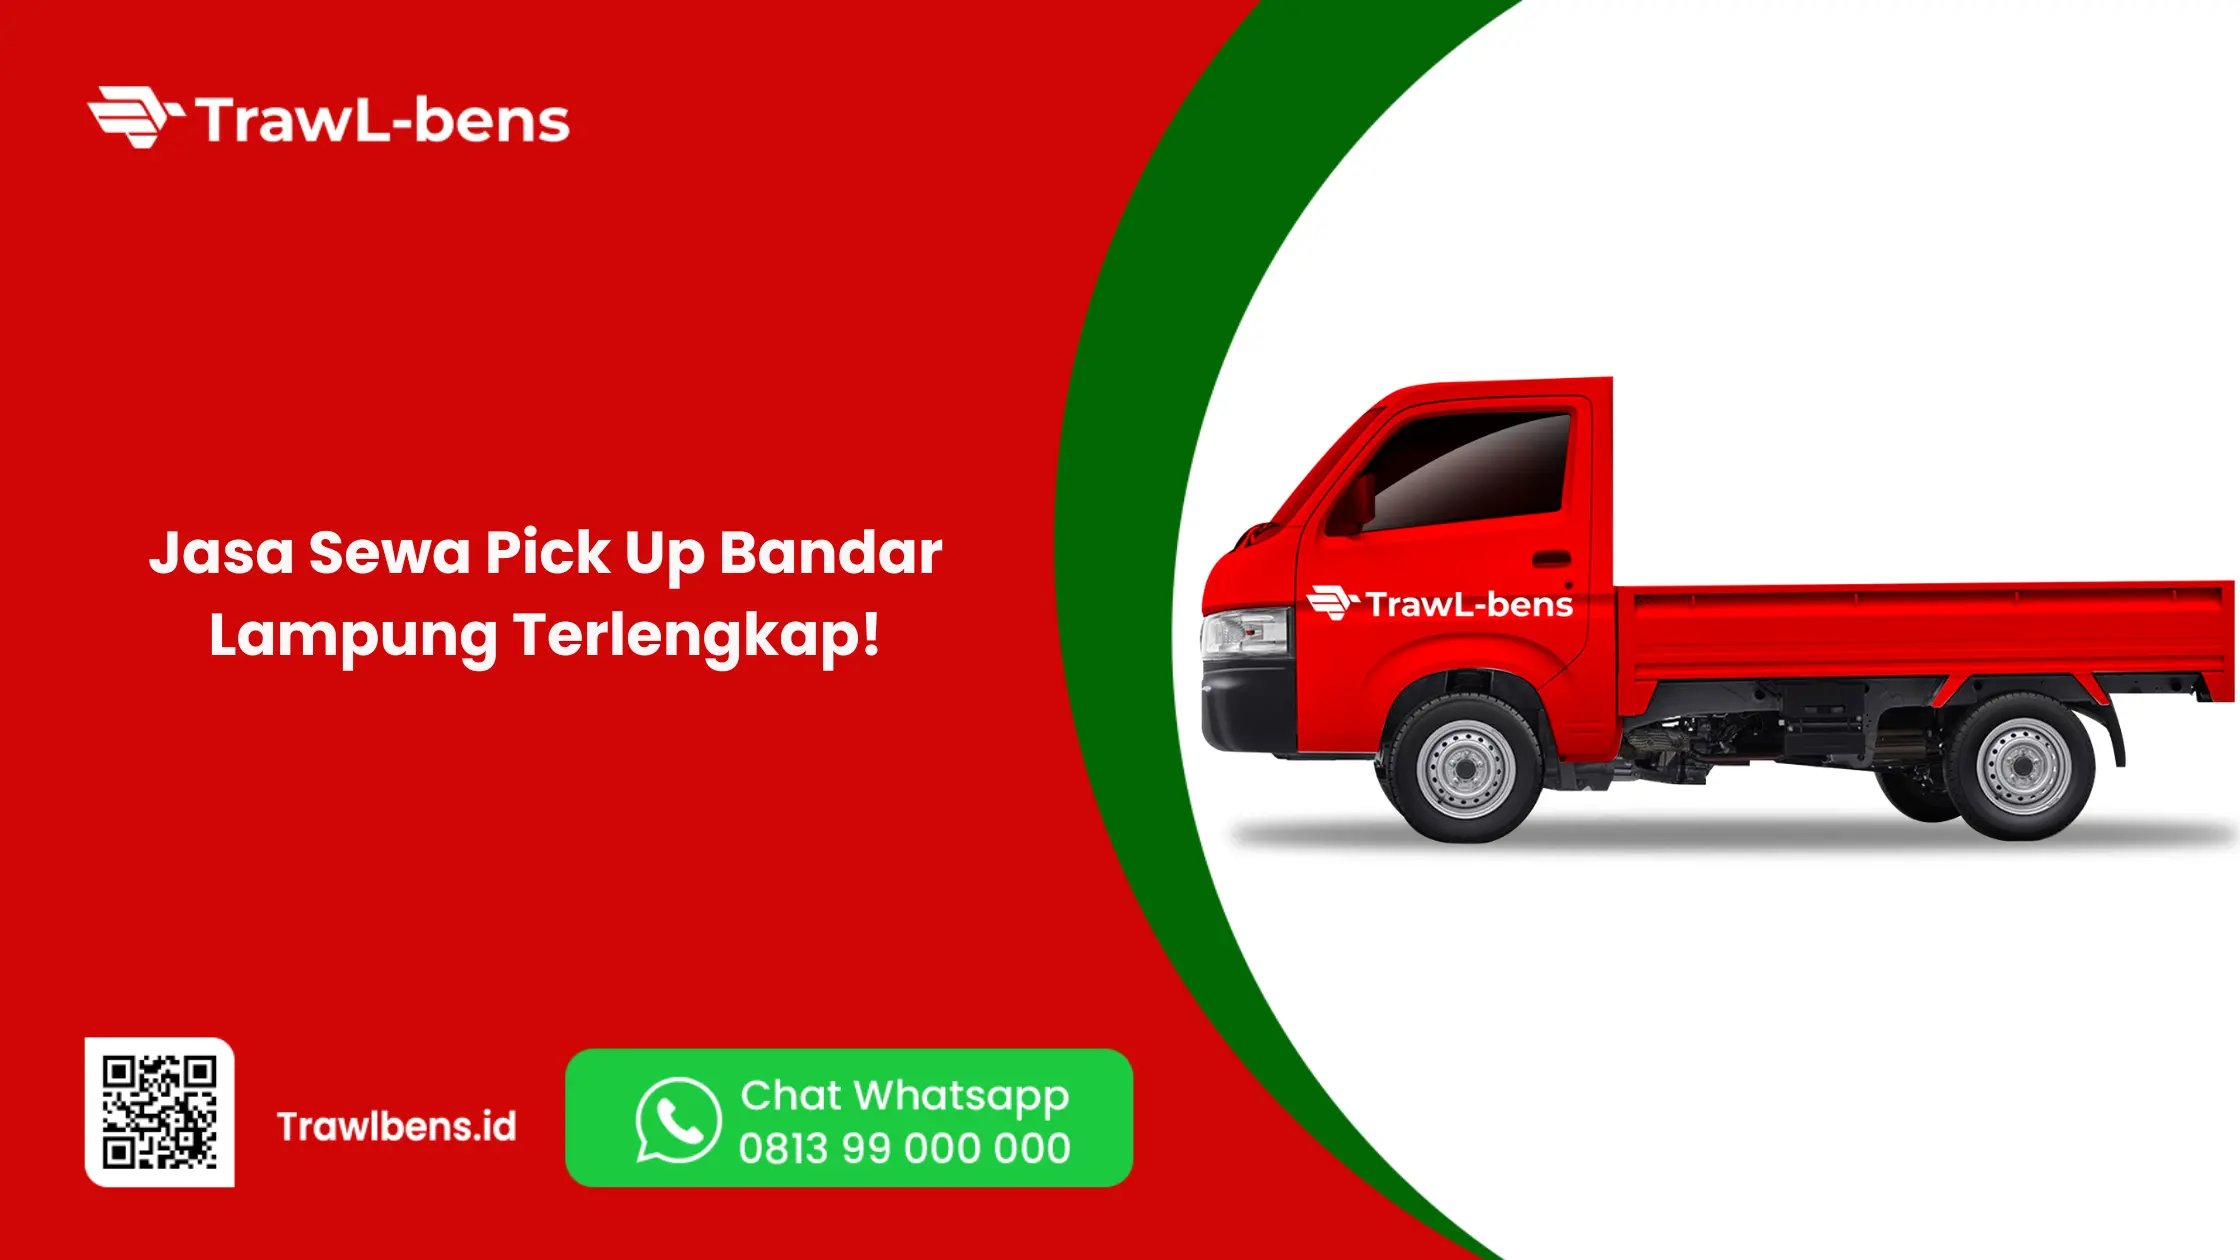 Jasa Sewa Pick Up Bandar Lampung Terlengkap!